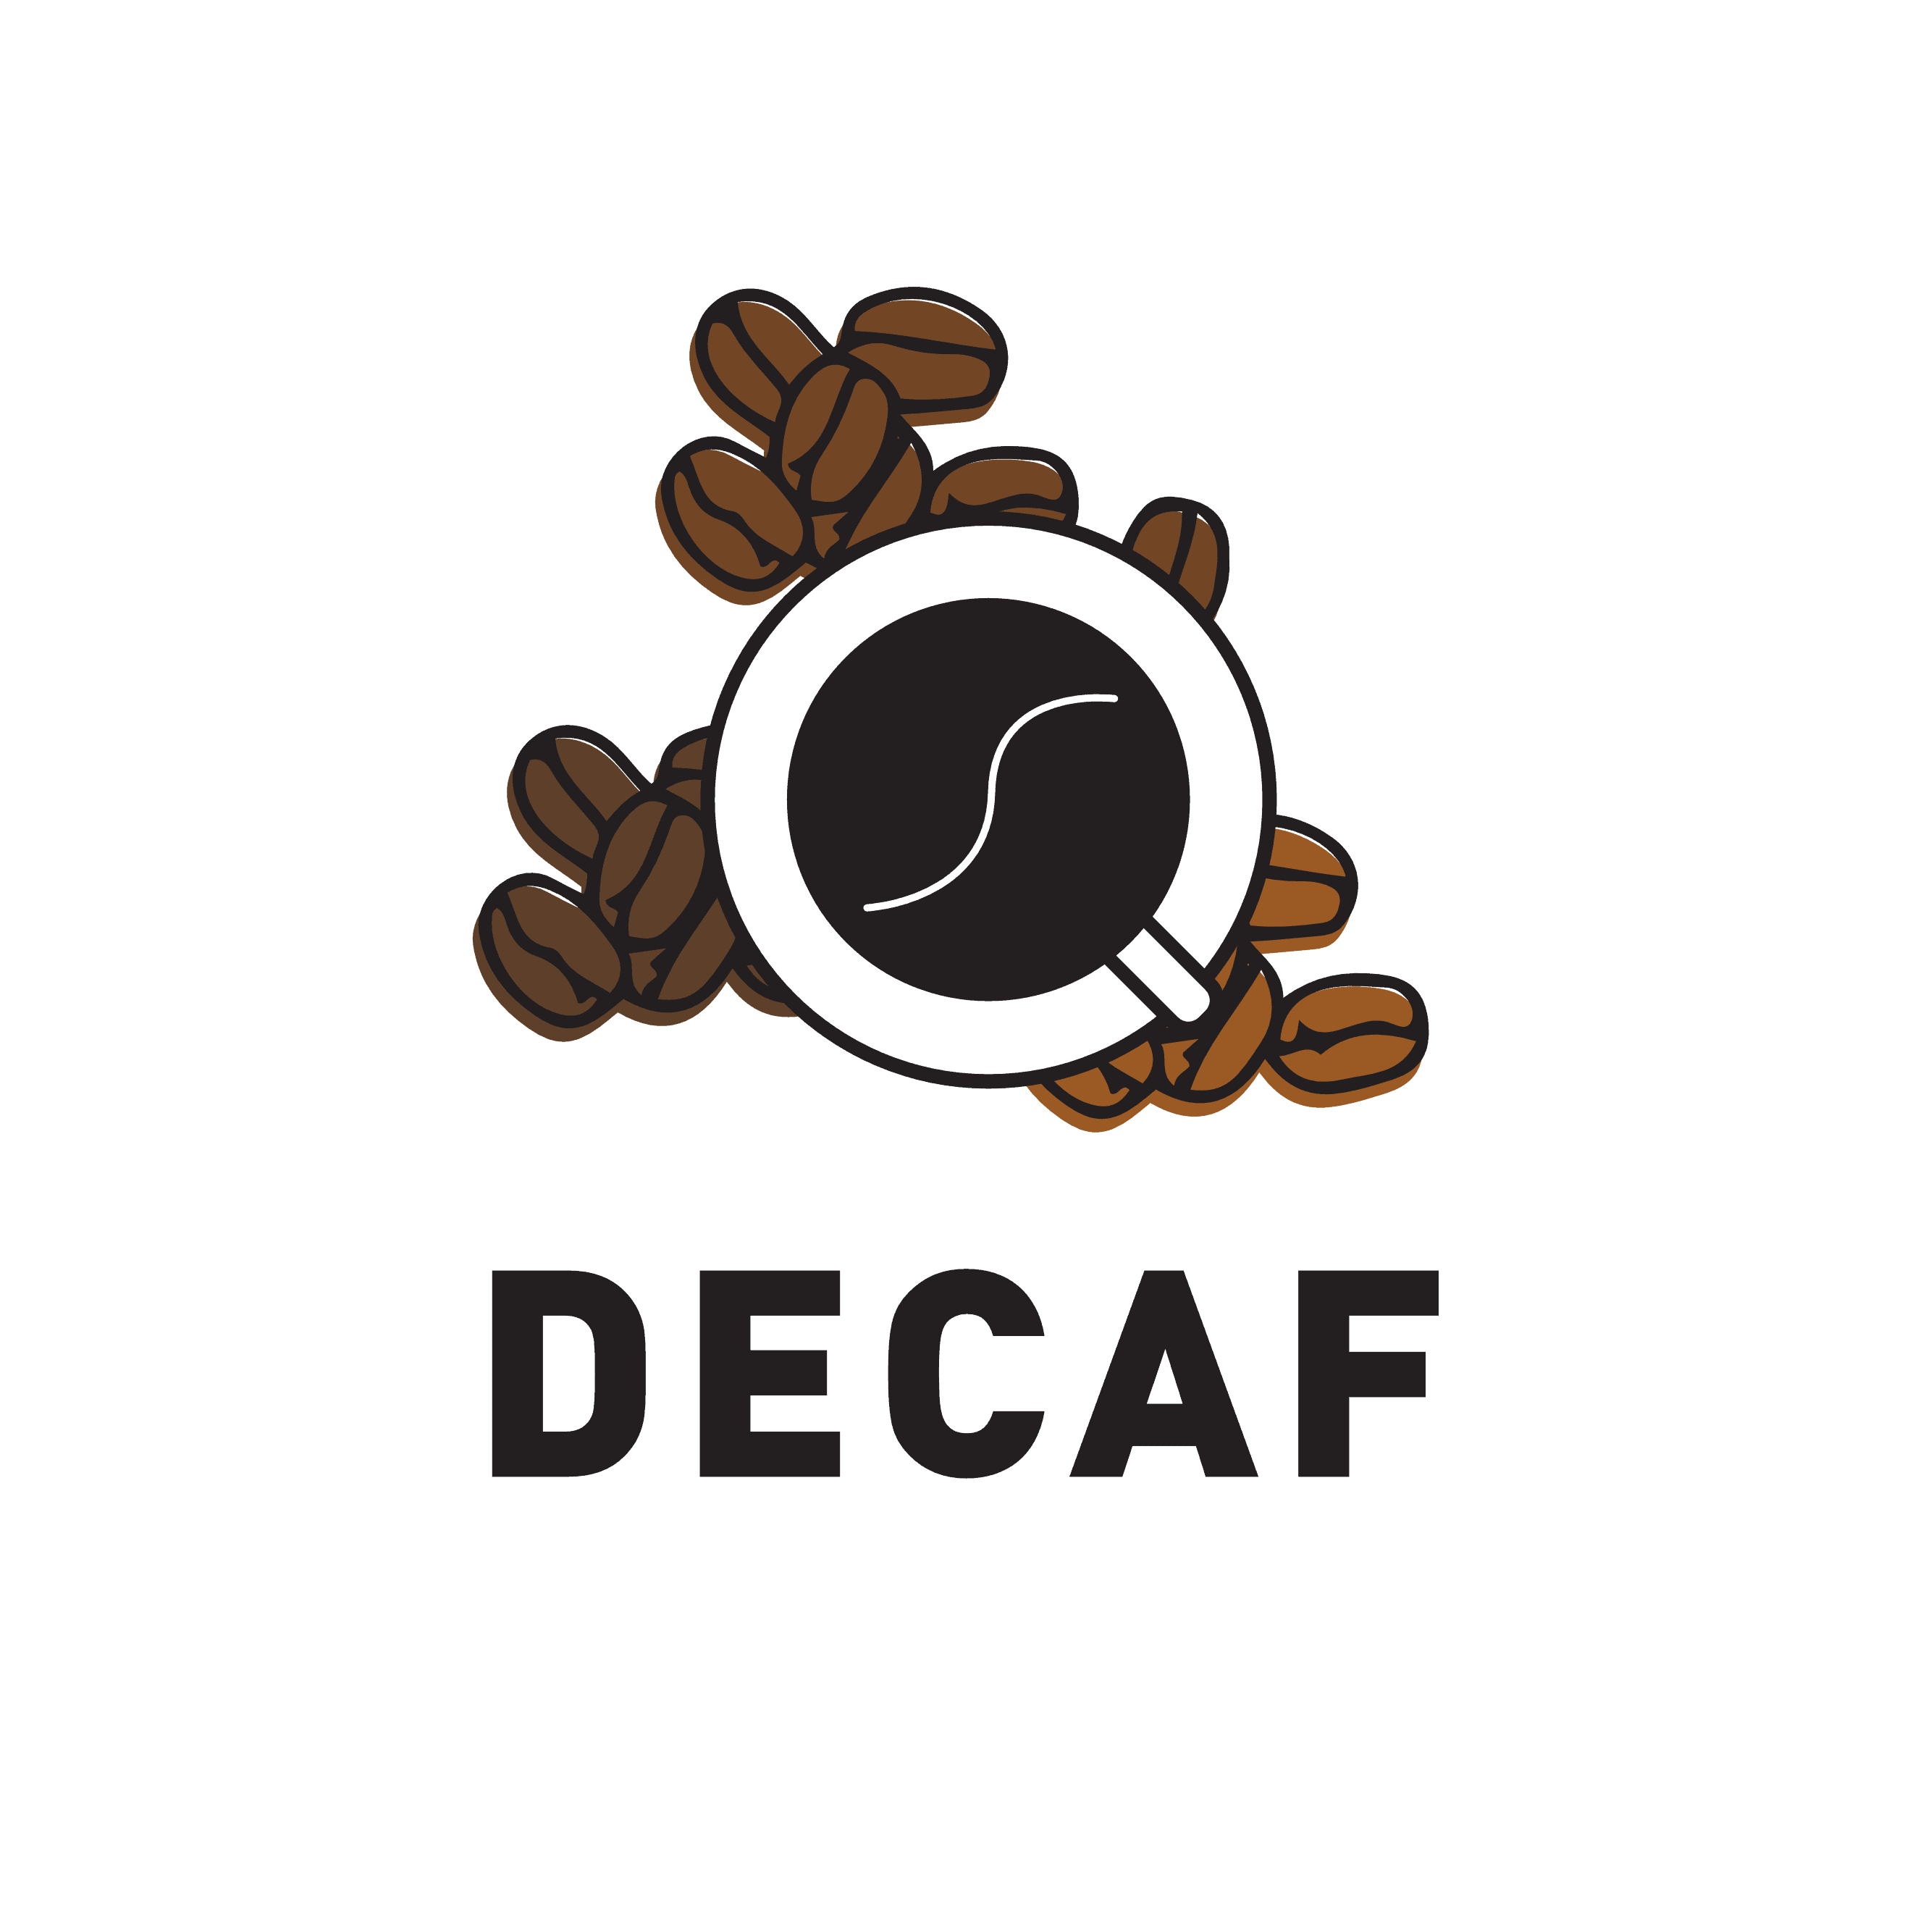 Fidalgo Decaf Coffee